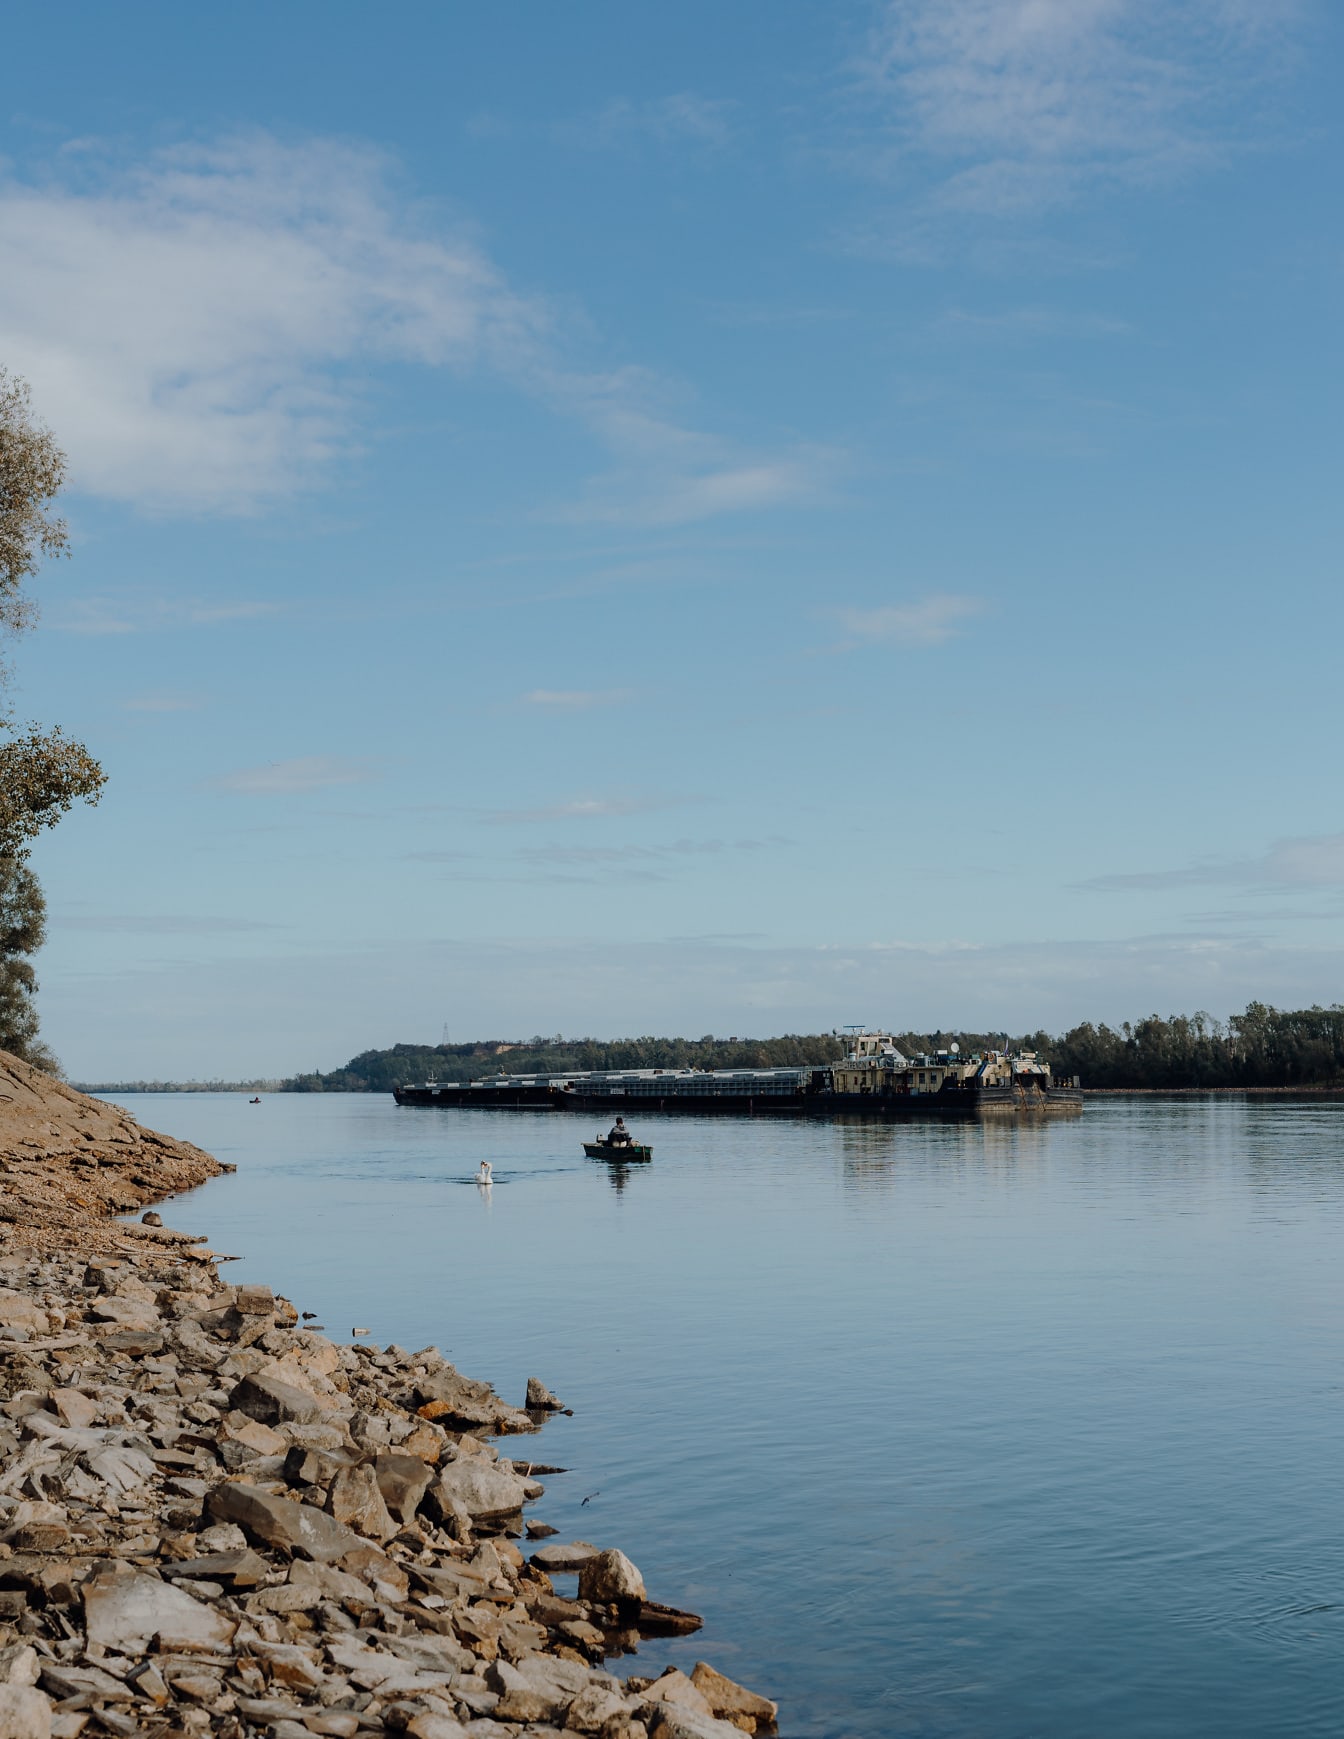 Quang cảnh tàu chở hàng sà lan trên sông Danube nhìn từ bờ biển đá